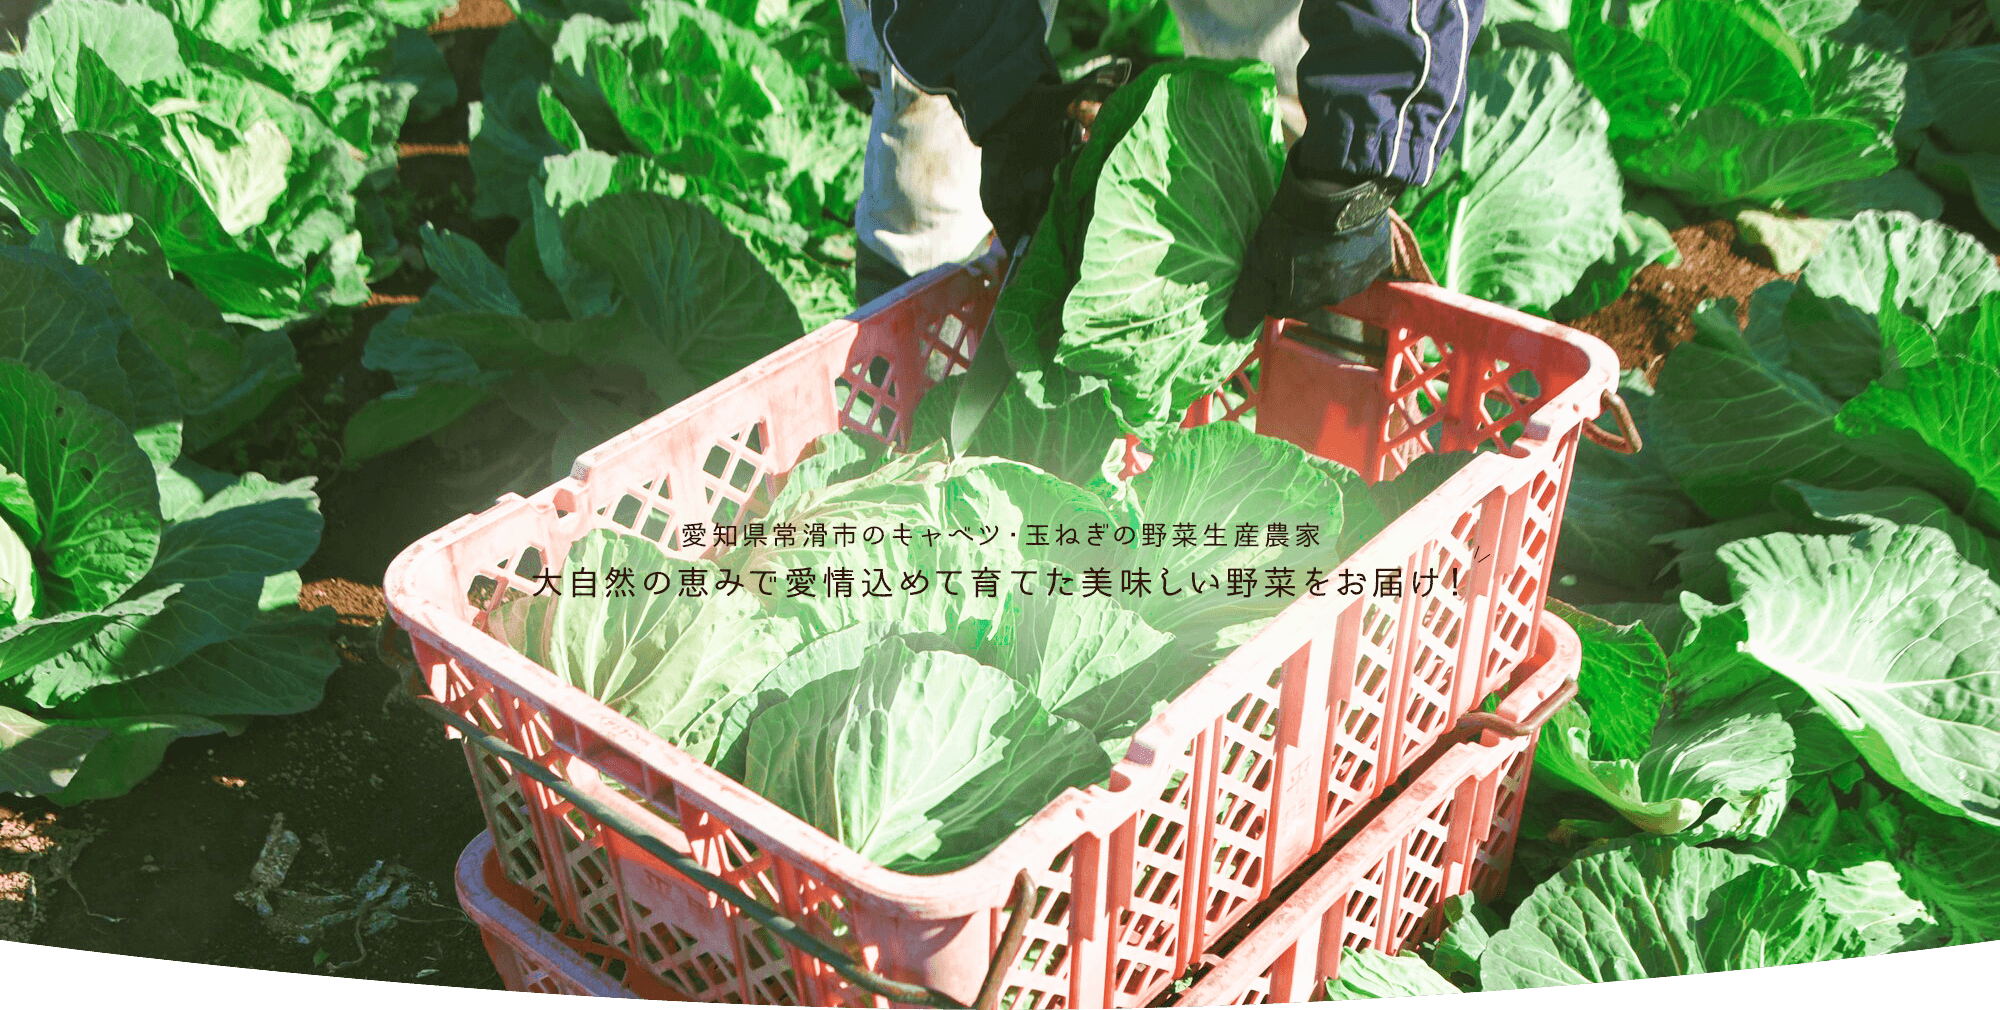 愛知県常滑市のキャベツ・玉ねぎの野菜生産農家 大自然の恵みで愛情込めて育てた美味しい野菜をお届け！